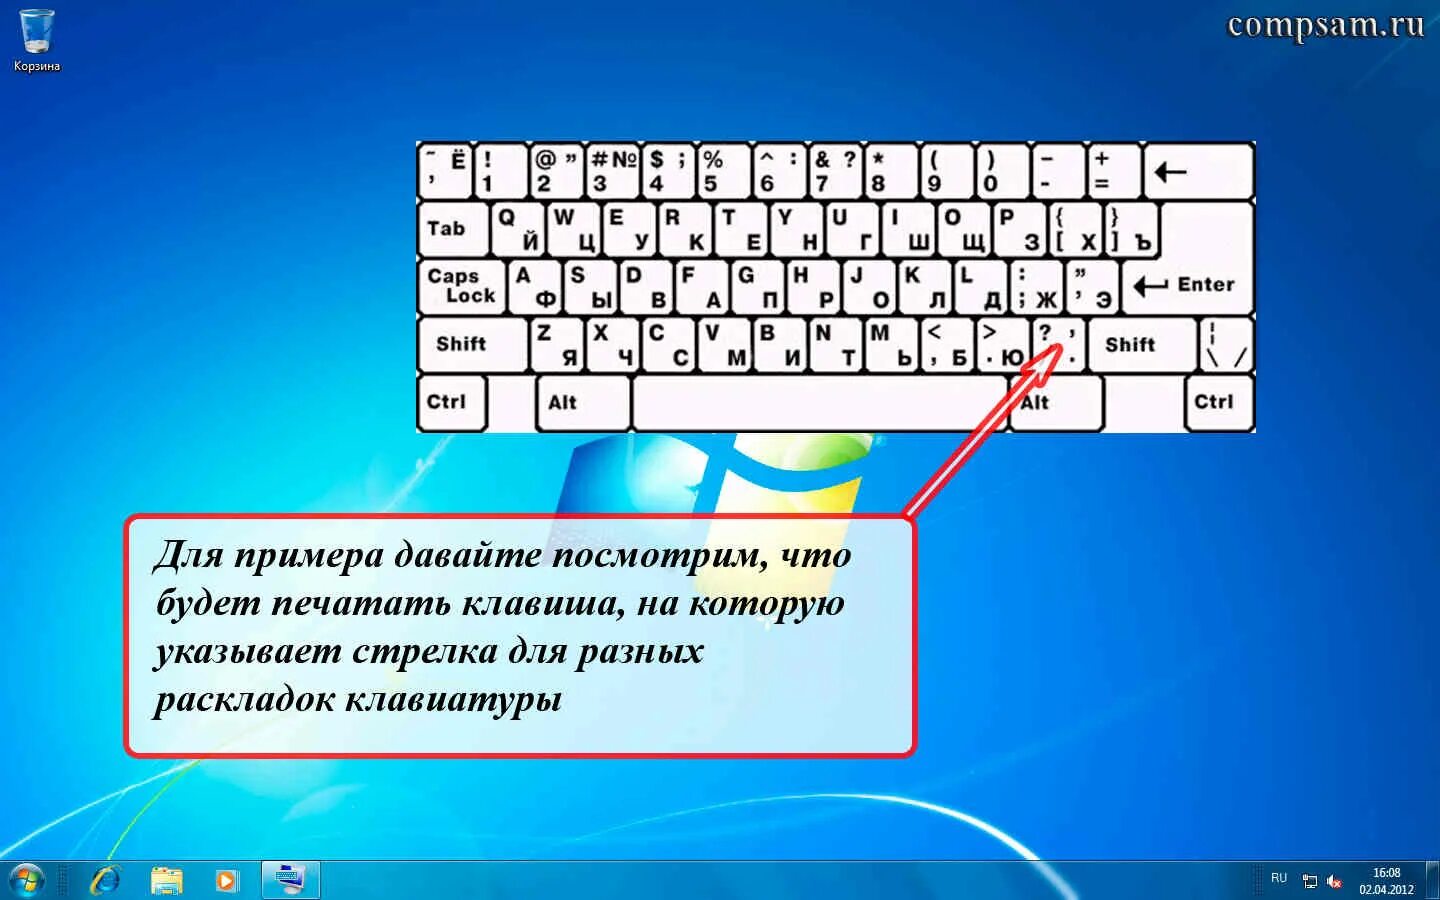 Перевести клавиатуру на английский на компьютере клавишами. Как поставить запятую на компе снизу. Как поставить запятую на клавиатуре ноутбука снизу. Как поставить запятую на клавиатуре. Раскладка языка на клавиатуре.